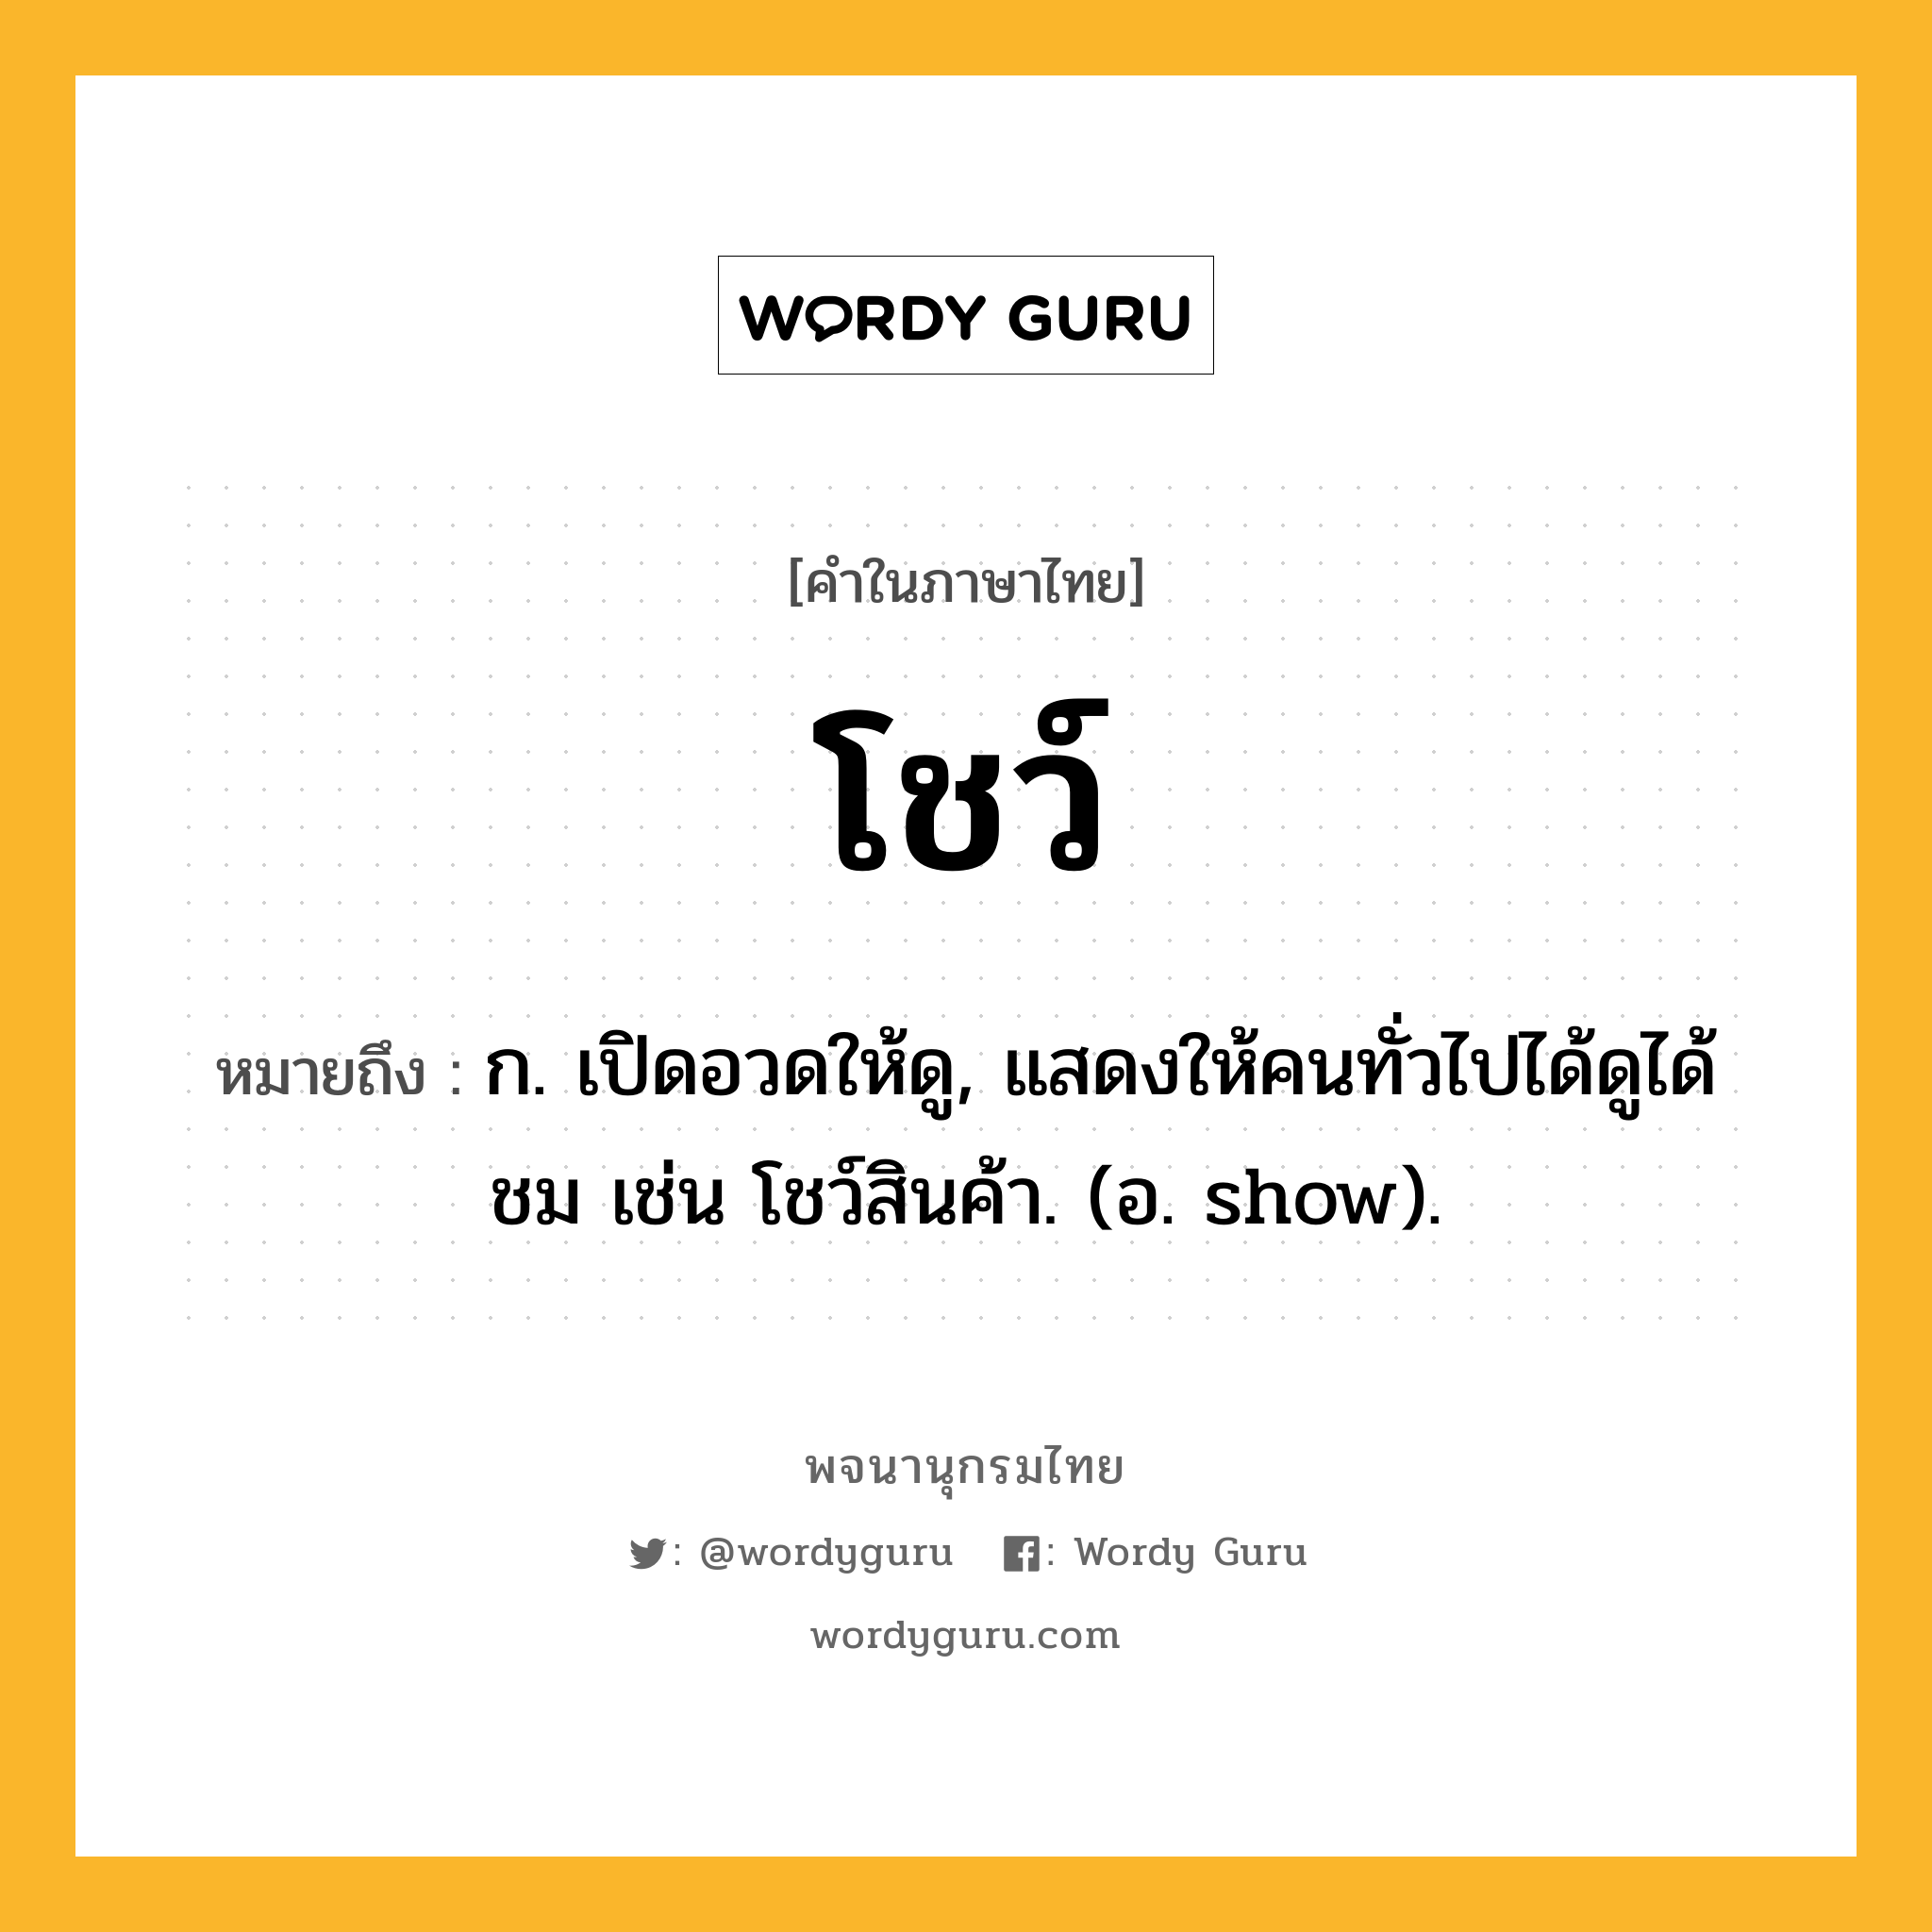 โชว์ หมายถึงอะไร?, คำในภาษาไทย โชว์ หมายถึง ก. เปิดอวดให้ดู, แสดงให้คนทั่วไปได้ดูได้ชม เช่น โชว์สินค้า. (อ. show).